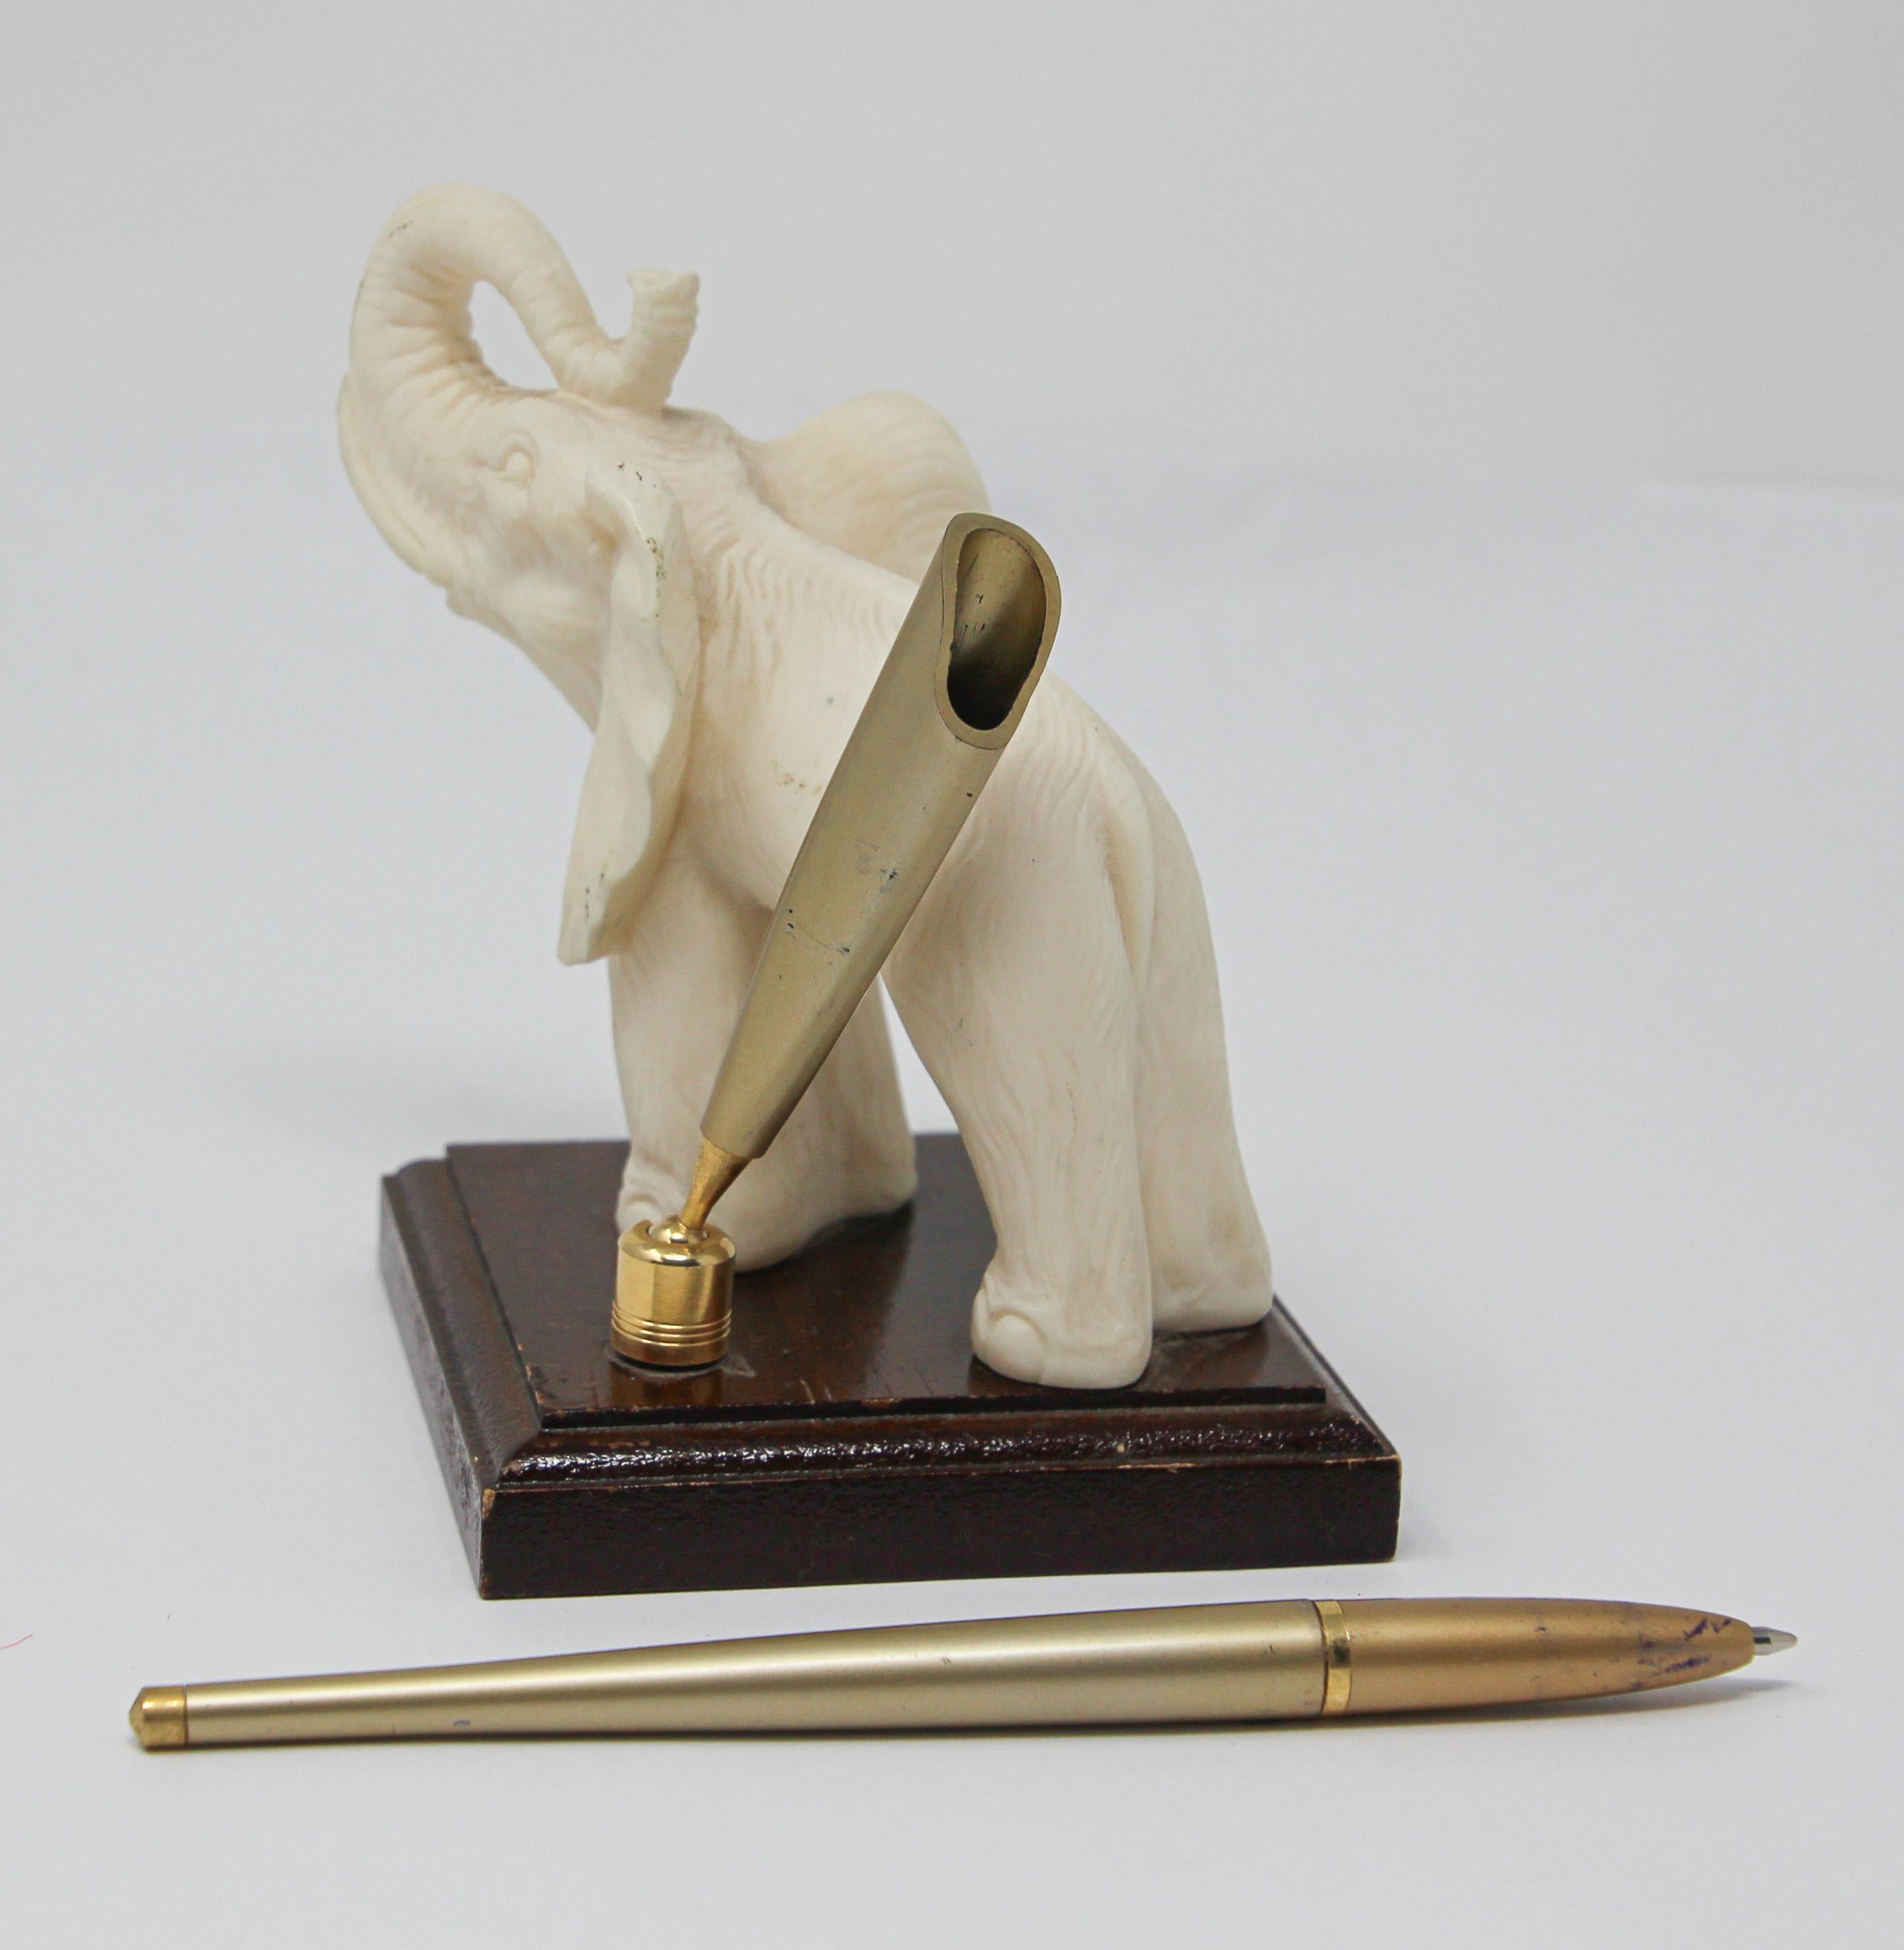 Composition Vintage White Elephant Sculpture Pen Holder, Jaipur, Rajasthan India For Sale